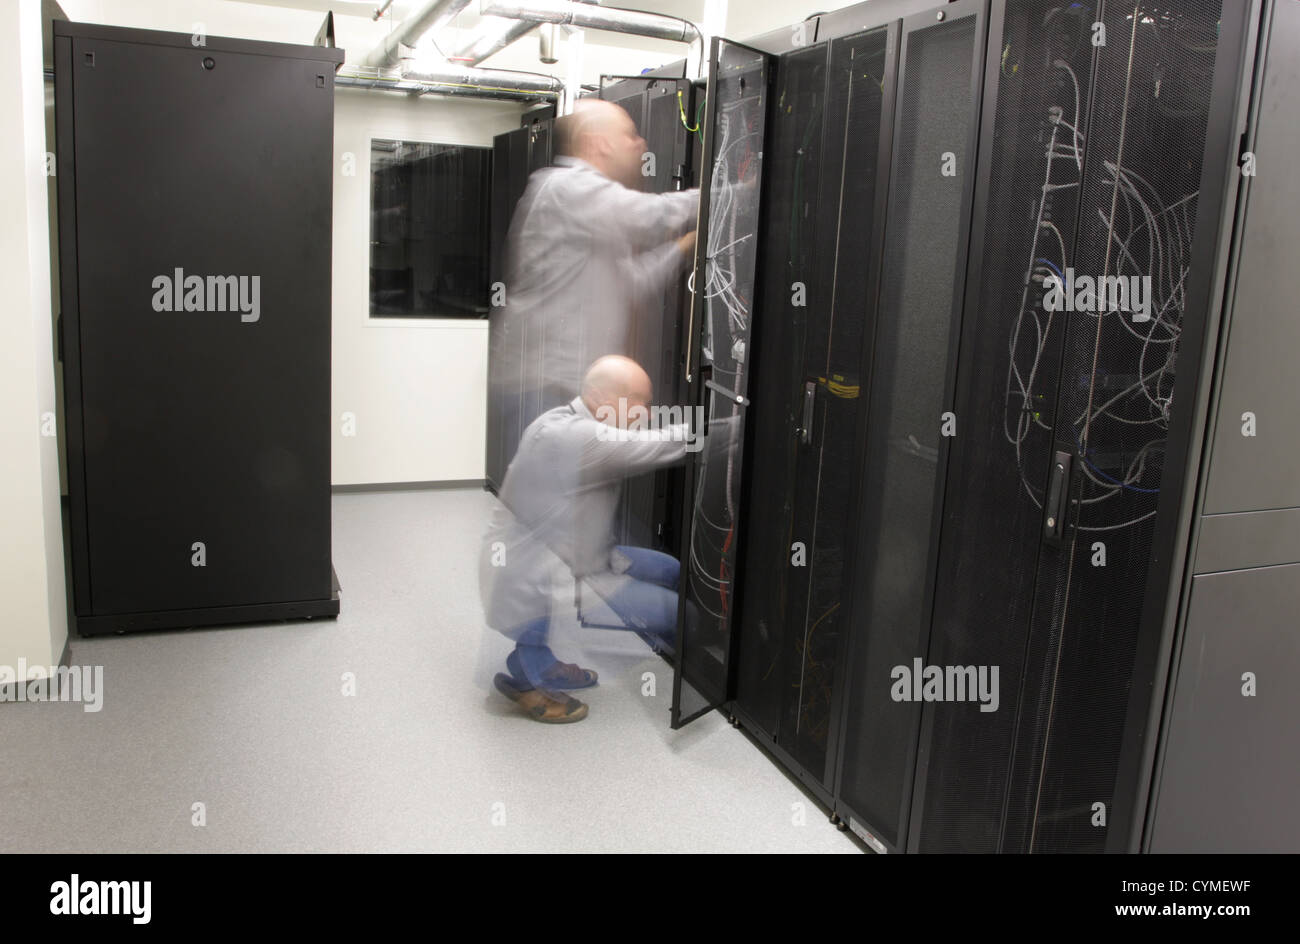 Technicien réseau faisant le travail préventif sur un réseau, d'une exposition longue personne blurres Banque D'Images